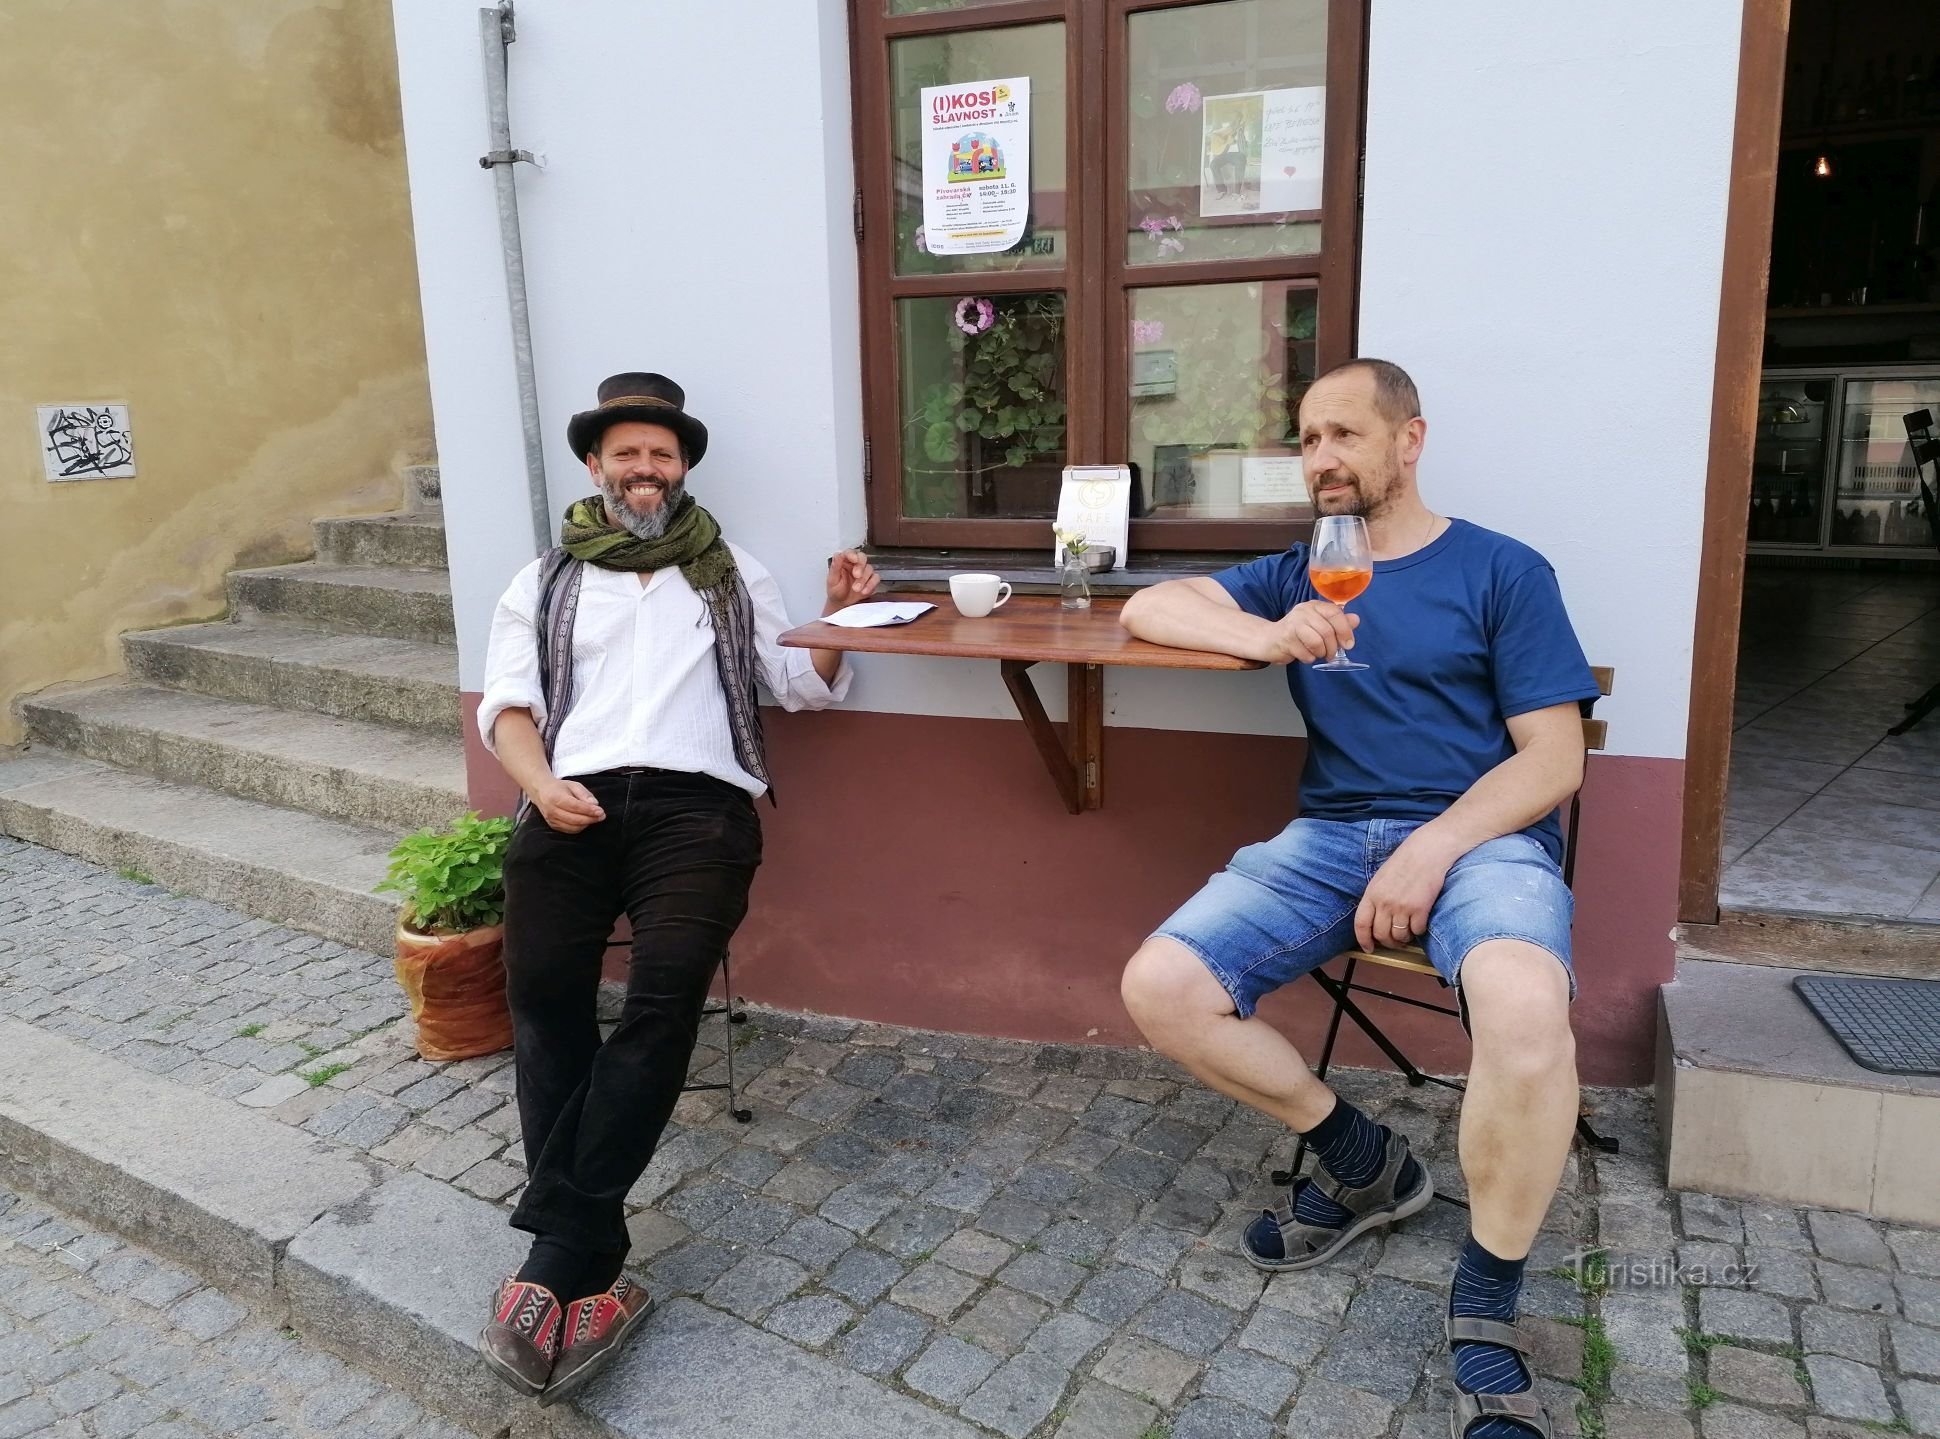 Ein Café mit Seele in der Plešivecká-Straße in Český Krumlov